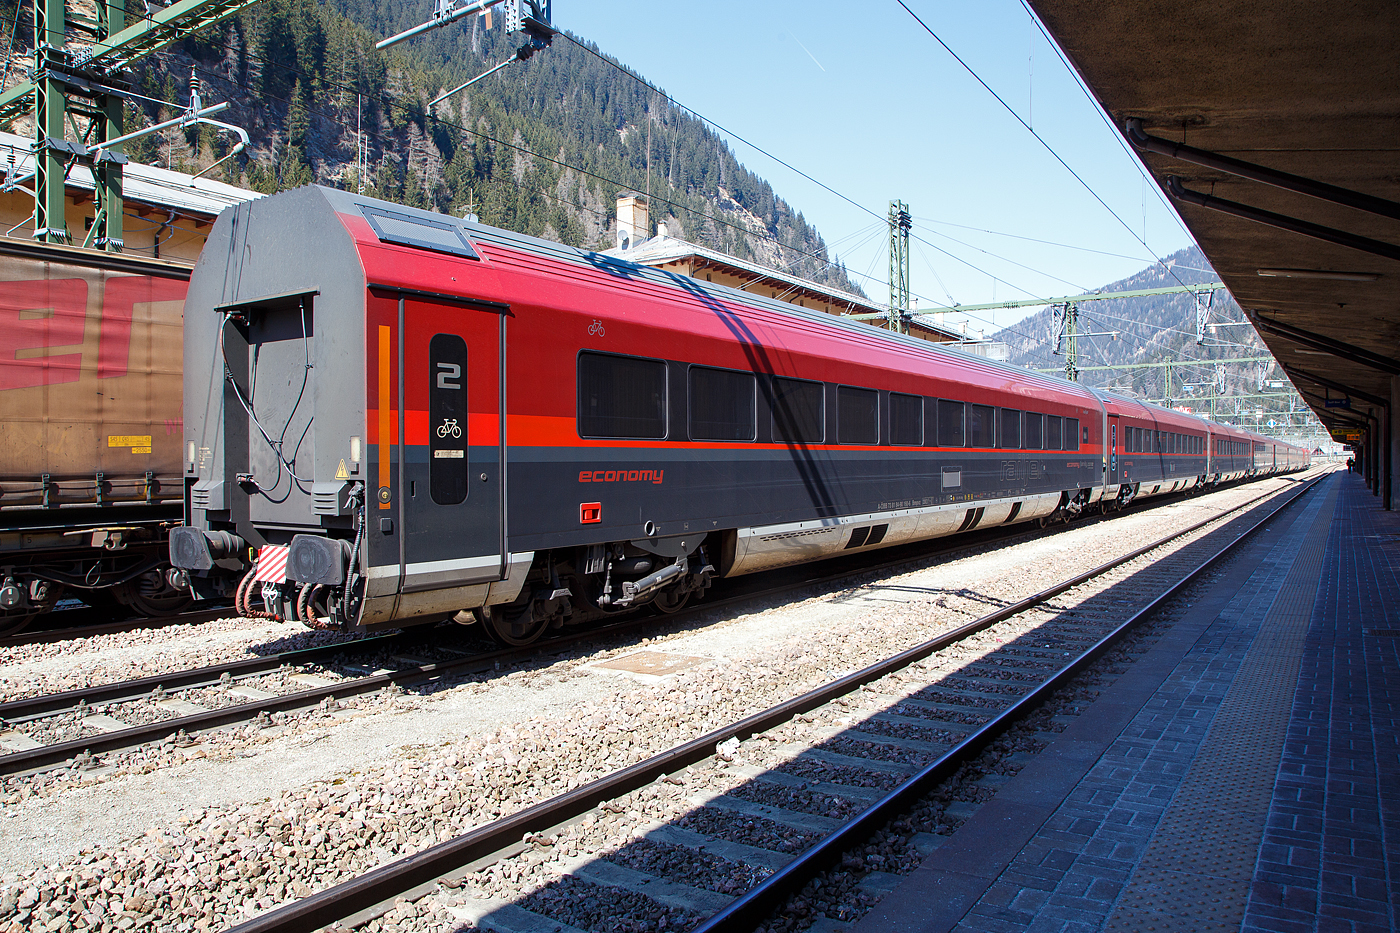 Der 2.Klasse ÖBB-Railjet-Wagen mit Fahrradabteil (economy / 2. Klasse / family zone) A-ÖBB 73 81 84-90 160-6 der Gattung Bmpvz am 28 März 2022 im Bahnhof Brenner /Brennero.

Von diesen Wagen wurden 60 Stück zwischen 2008 und 2016 von Siemens in Wien (ehemals SGP - Simmering-Graz-Pauker AG) gebaut. Die Wagen sind für eine Höchstgeschwindigkeit von 230 km/h in Deutschland, Österreich und Italien zugelassen.

Der Wagenkasten ist eine Schweißkonstruktion aus Profilen und Blechen (Differentialbauweise). Die Einzelteile sind mehrheitlich aus Baustahl und ferritischem rostfreien Stahl hergestellt. Der Untergestell-Rahmen ist eine Schweißkonstruktion, bestehend aus gewalzten Stahlprofilen, Abkantprofilen und Stahlblechteilen. Der Untergestell-Rahmen bildet mit den Seitenwänden, dem Dach und den Stirnwänden eine tragende Einheit. Ein Wellblech an der Unterseite dieser Konstruktion schließt das Untergestell ab. An den beiden Wagenenden befinden sich die Kopfstücke für die Aufnahme der Kurzkupplung,

Fahrwerk          
Die Drehgestellfamilie SF400, luftgefederte Laufdrehgestelle, wurde für den Einsatz in lokbespannten Reisezügen im Wendezugbetrieb entwickelt. Optimales Laufverhalten im Hinblick auf Stabilität, Komfort und Entgleisungssicherheit sowie hohe Zuverlässigkeit und niedrige Betriebskosten sind Merkmale dieses Drehgestelltyps. Das gegenständliche Drehgestell SF400 ÖBB-railjet ist ein Drehgestell mit drei Bremsscheiben, Magnetschienenbremse (außer Afmpz am WE 2) und ist lauf- und bremstechnisch abgestimmt auf eine max. Betriebsgeschwindigkeit von 230 km/h.                      

TECHNISCHE DATEN (Bmpvz): 
Spurweite 1.435 mm
Länge über Puffer: 26.500 mm
Drehzapfenabstand: 19.000 mm 
Achsabstand im Drehgestell: 2.500 mm 
Raddurchmesser: 920 mm (neu) / 860 mm (abgenutzt)
Drehgestell: SF400
Wagenhöhe über SO: 4.050 mm
Wagenbreite: 2.825 mm
Fußbodenhöhe Abteil über SO: 1.250 mm
Lichte Weite Einstieg: 2 x 850 mm
Lichte Weite Übergang: 1.100 mm
Bremsanlage: 3 Scheiben pro Achse + Mg
Höchstgeschwindigkeit: 230 km/h (lauftechnisch 250 km/h möglich)
Min. Kurvenradius: 150 m
Eigengewicht: 51  t
Sitzplätze: 72 (2.Klasse) im Großraumabteil
Fahrradabstellplätze: 5
Toiletten: 1 (Rollstuhlgerecht)
Besonderheit: Kinderkino & Familienzone
Bremse: KE-PR-Mg (D) 
Bremsanlage: 3 Scheiben pro Achse + Mg